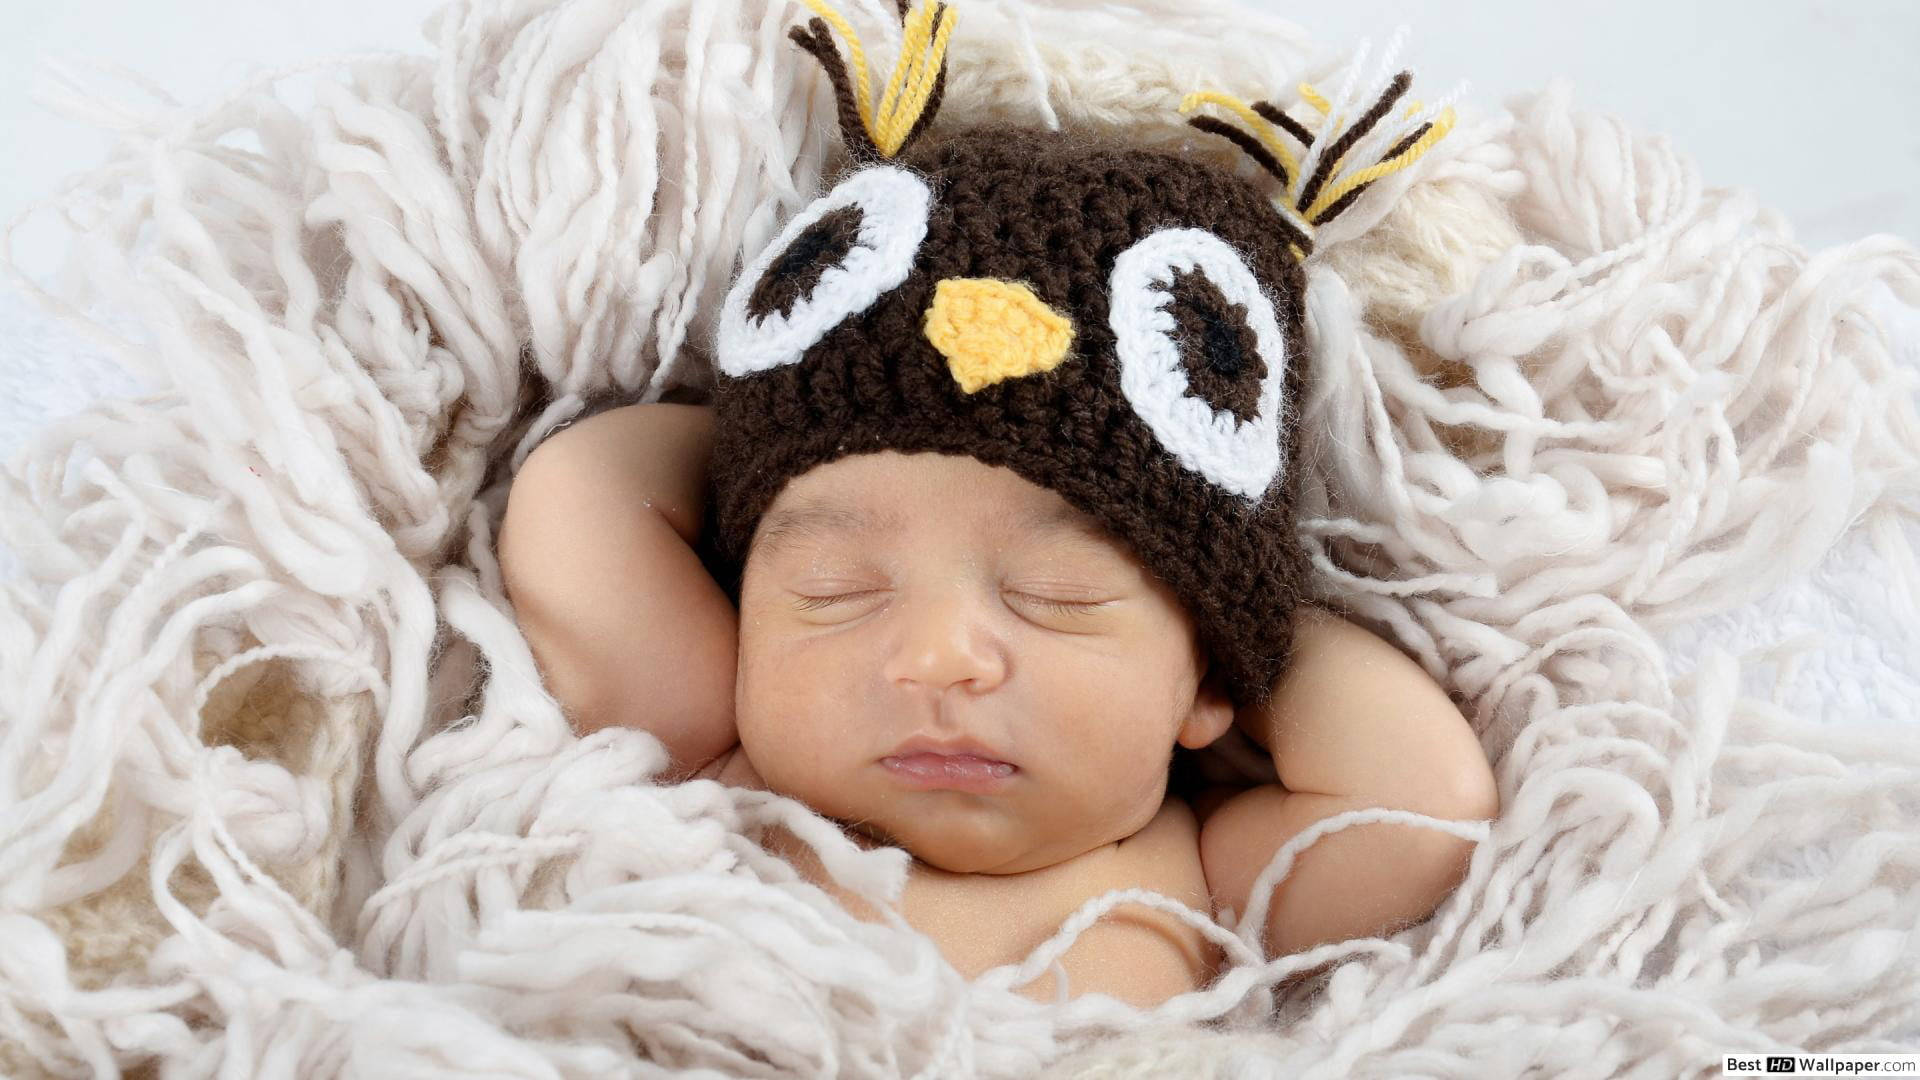 Cute Sleeping Baby Pictorial Wallpaper